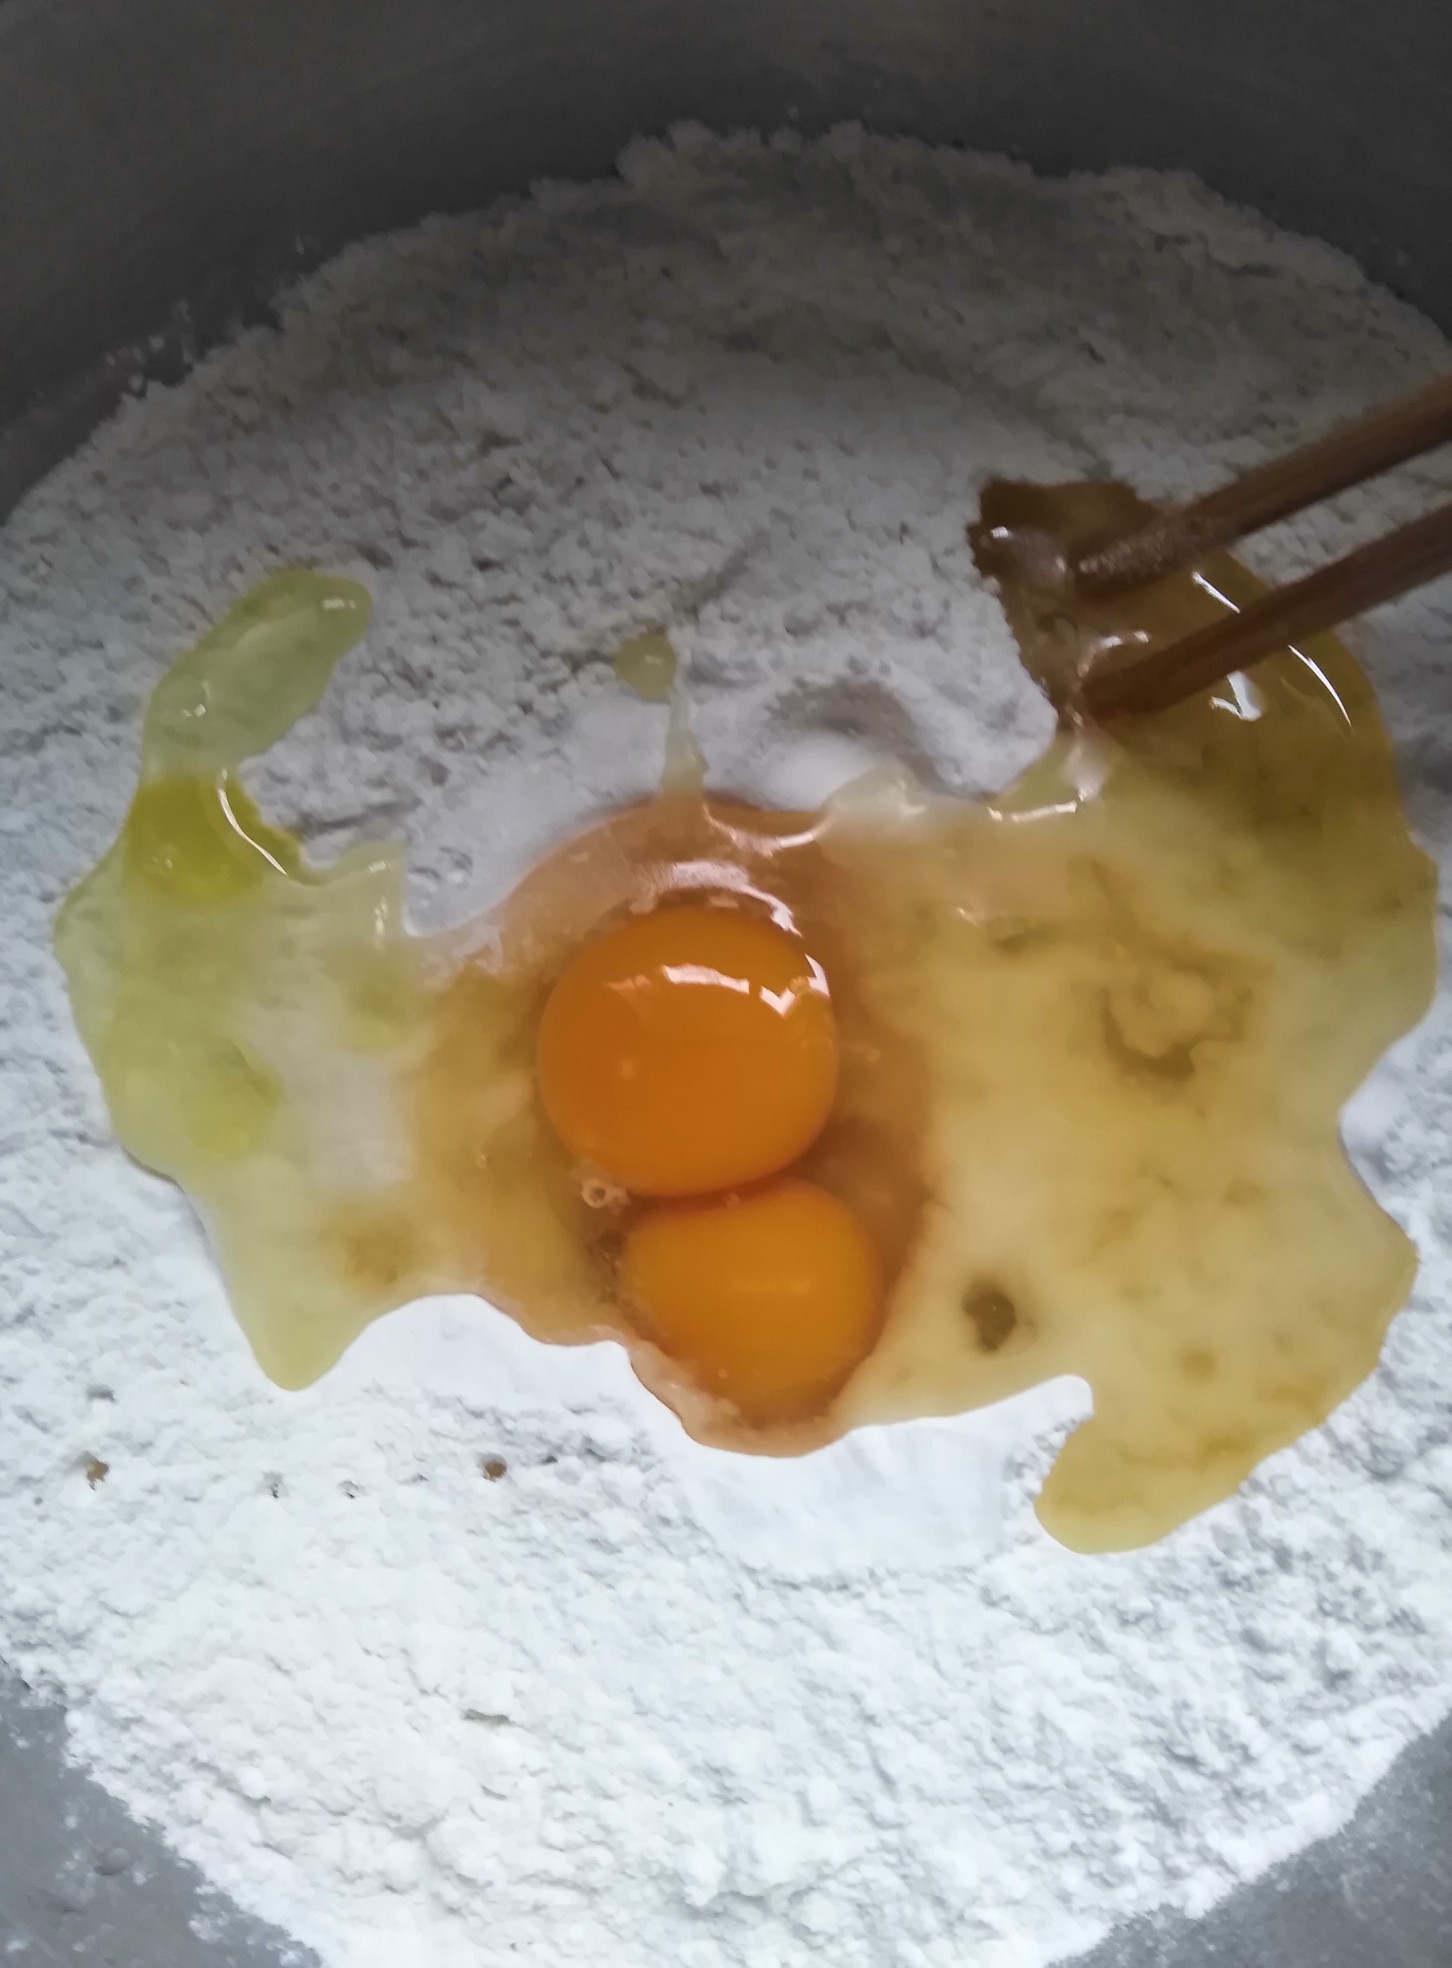 Handmade Egg Wonton Wrapper recipe